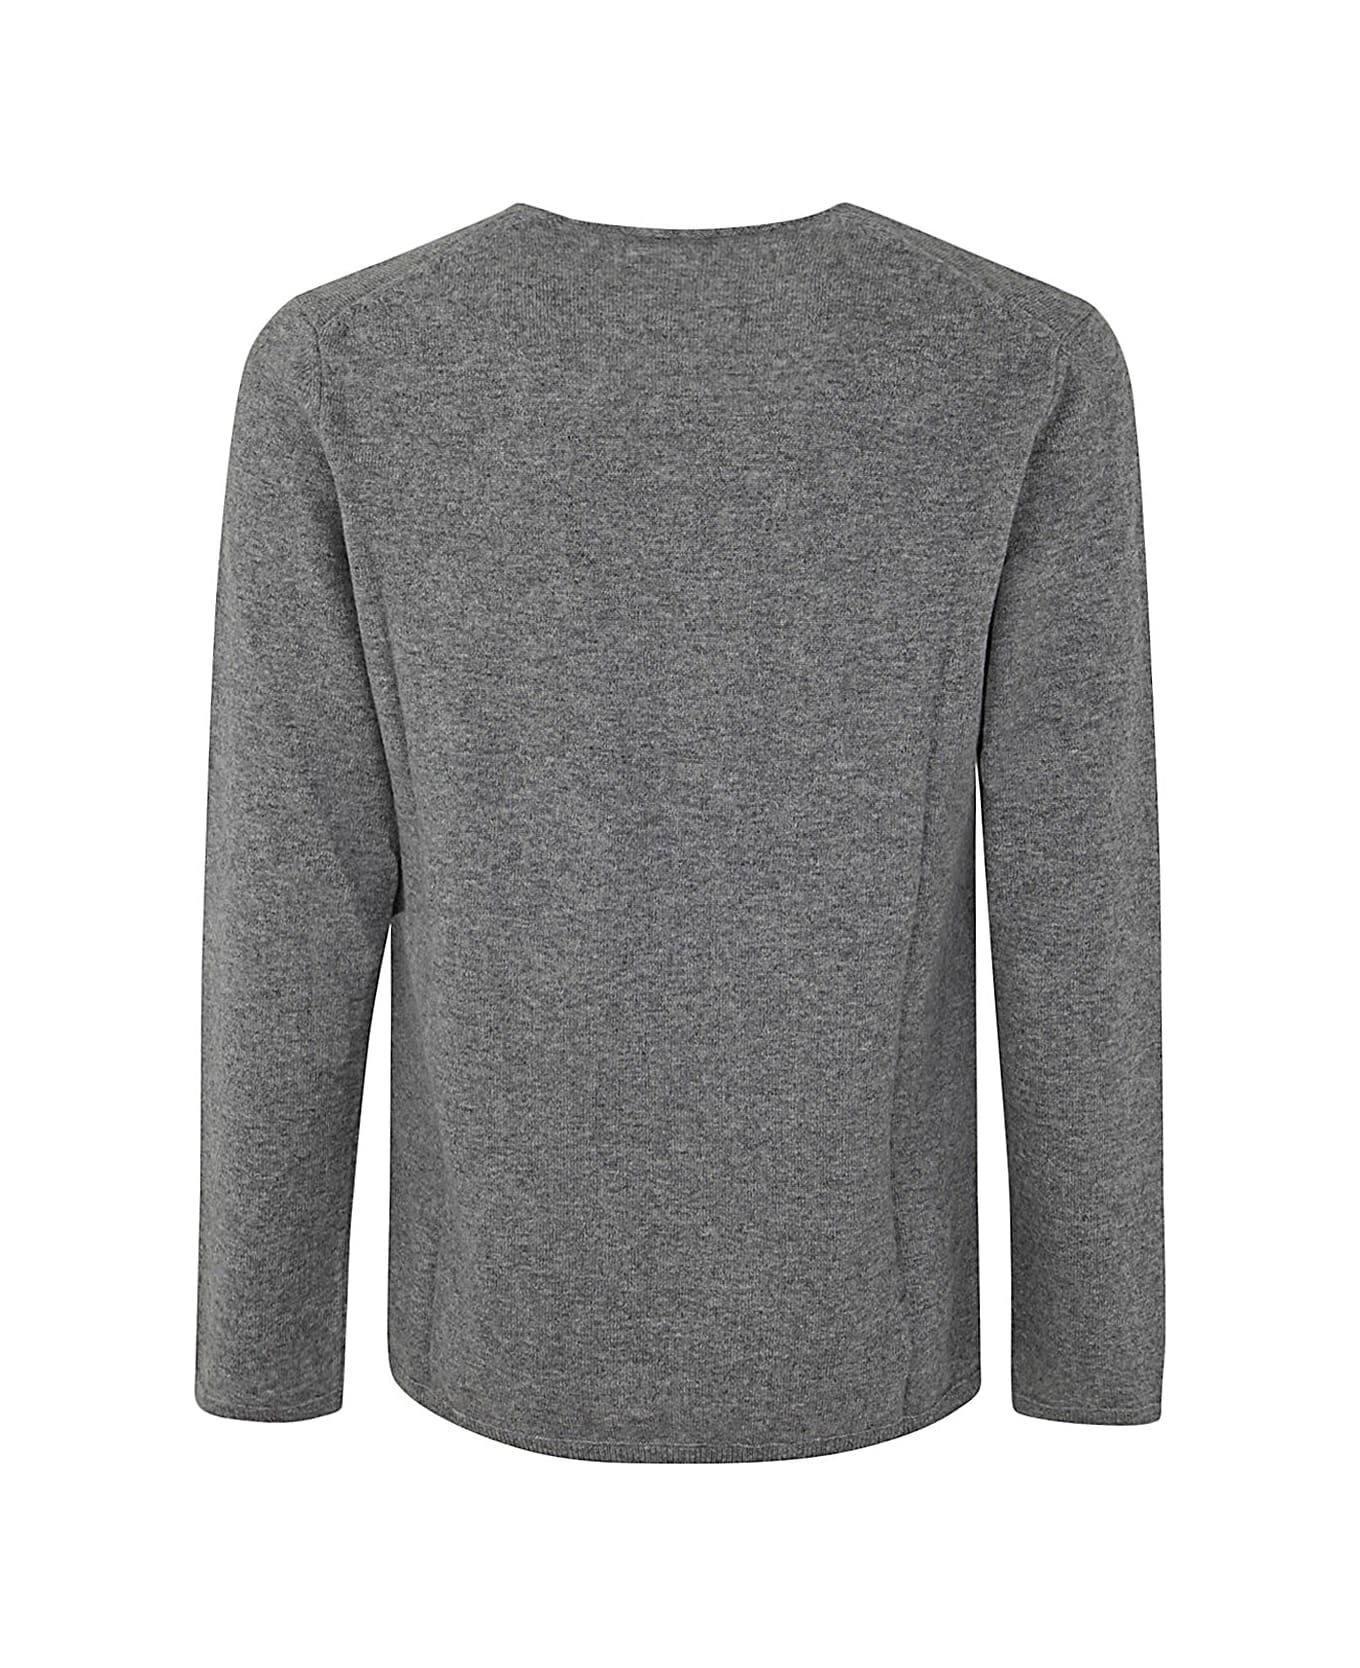 Comme des Garçons Shirt Mens Sweater Knit - Grey